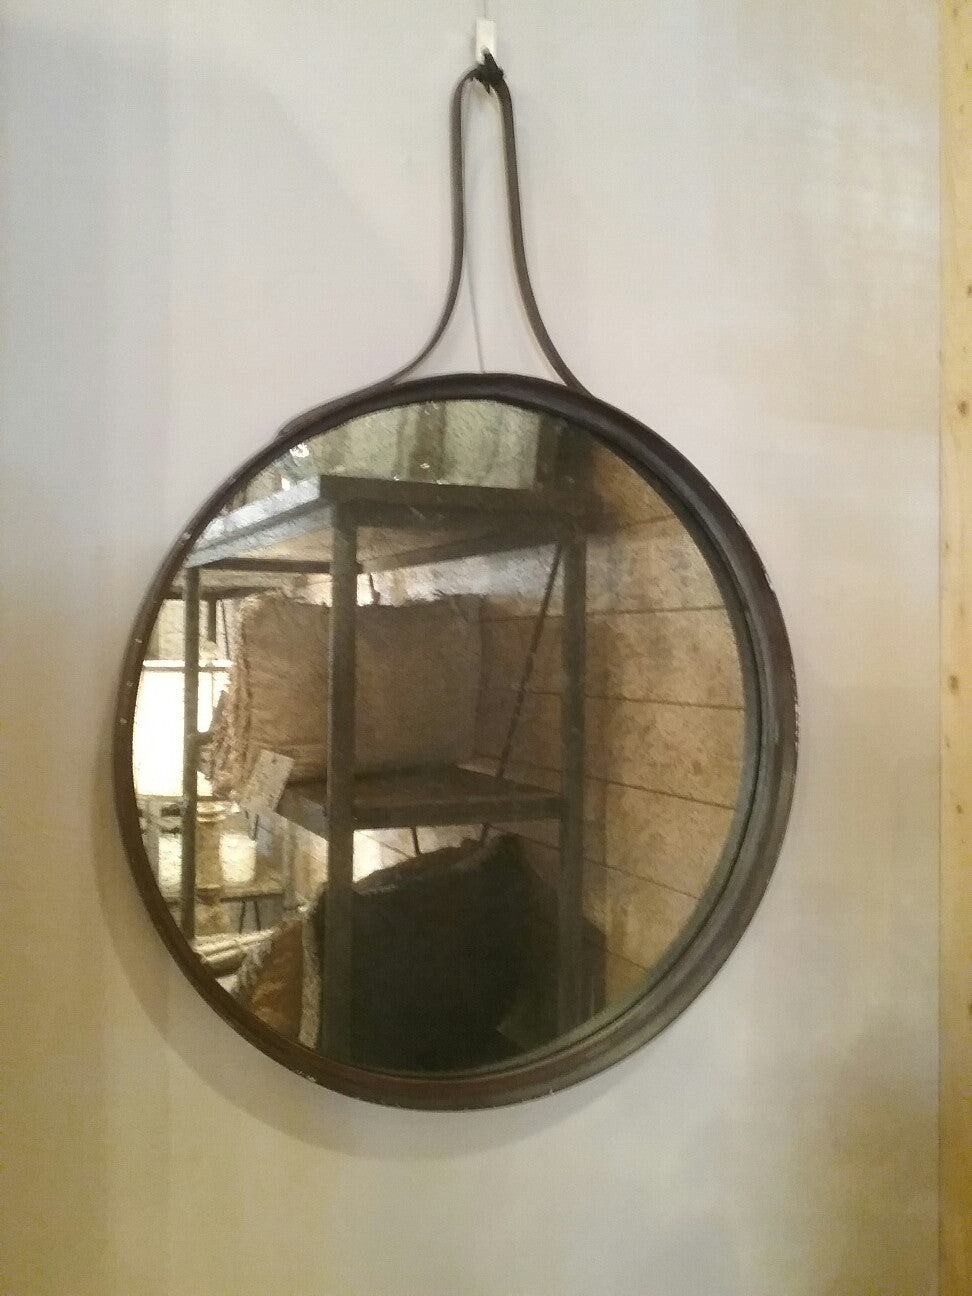 Round Antique Mirror